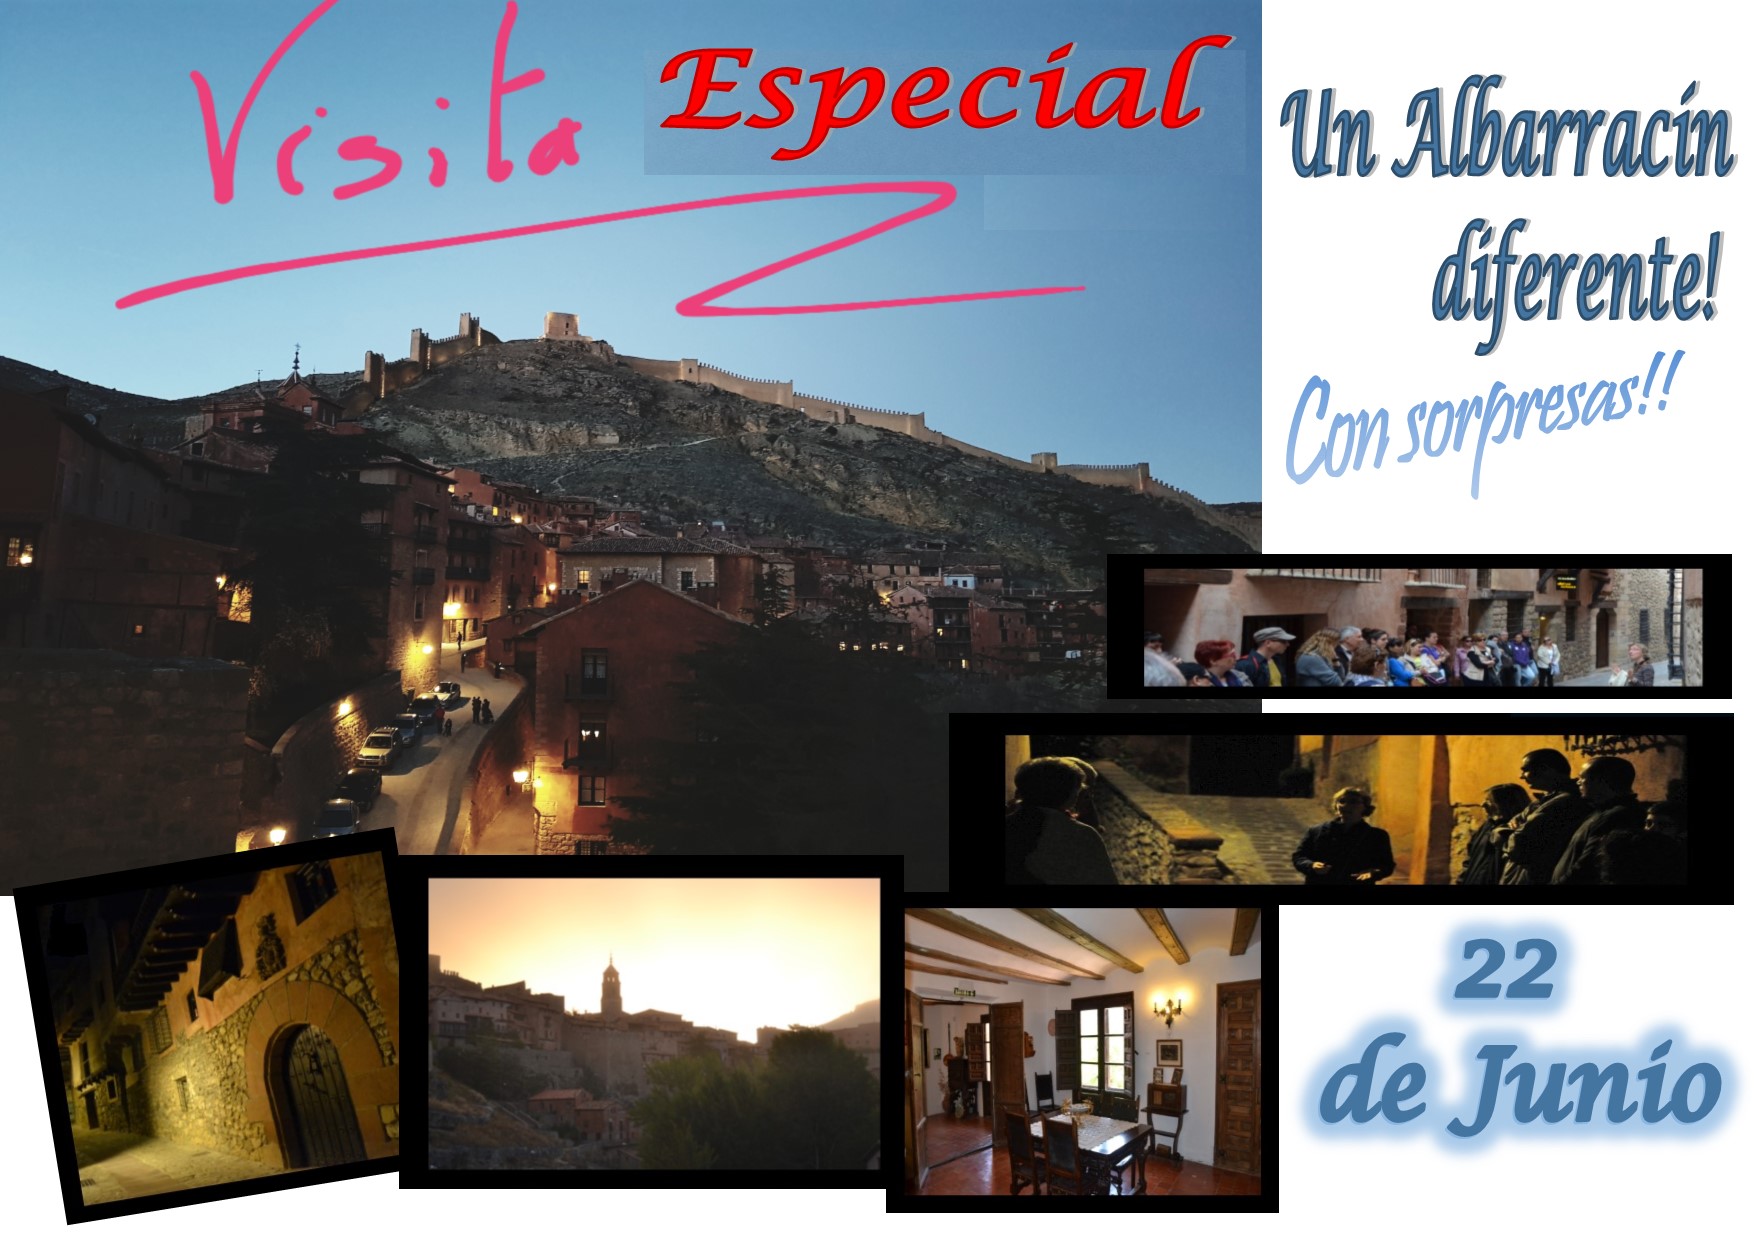 El Sábado 22… Albarracín Especial + Casa Museo…con sorpresas!